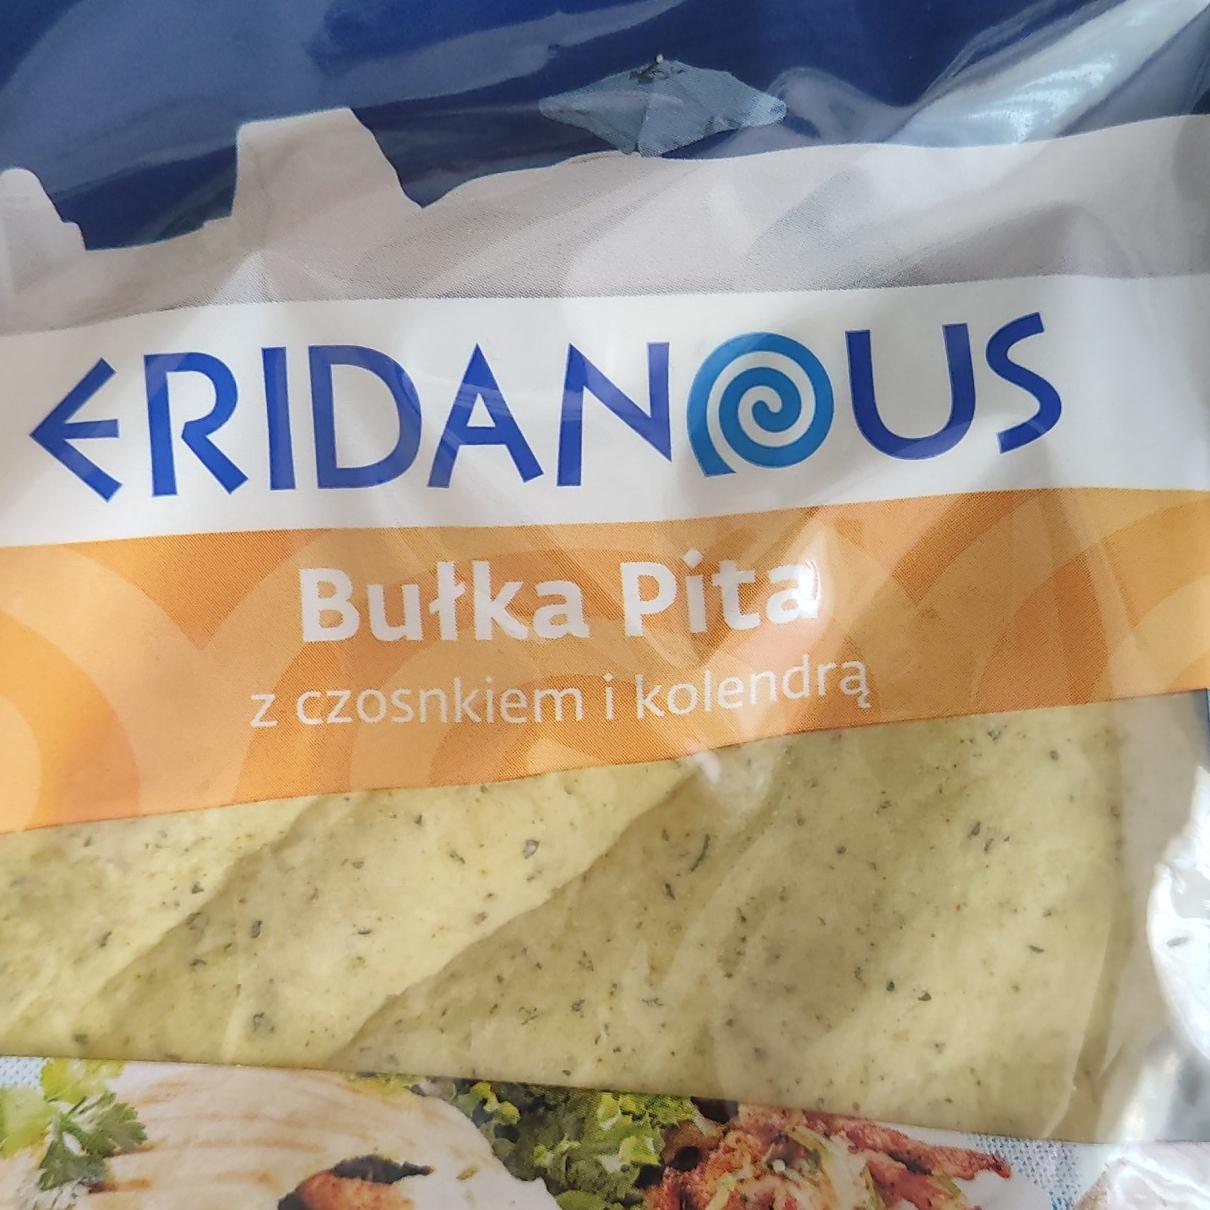 Фото - Bulka pita z czosnkiem i kolendrą Eridanous